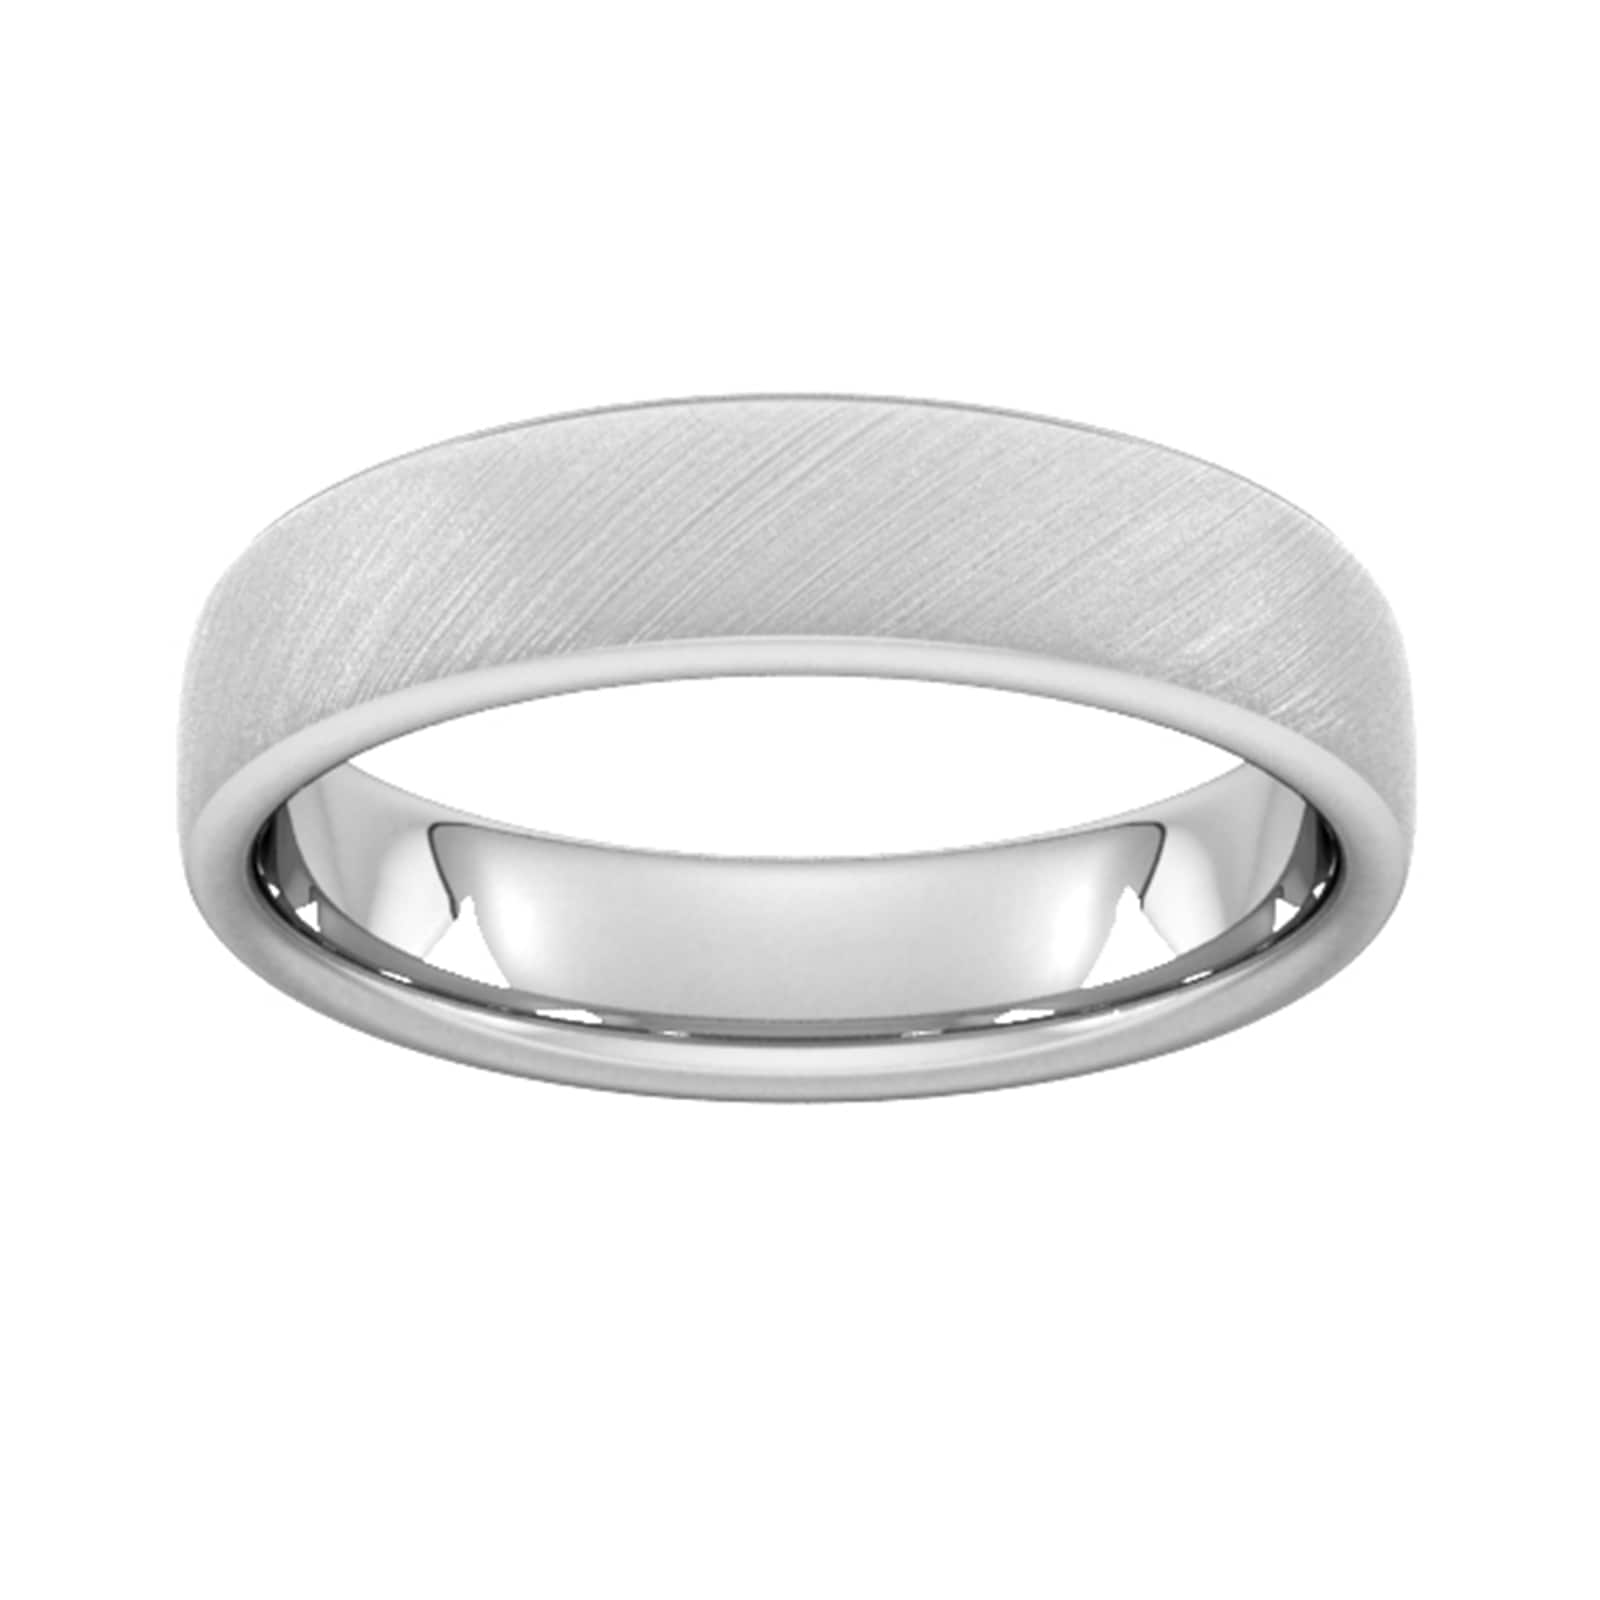 5mm slight court heavy diagonal matt finish wedding ring in 950 palladium - ring size s